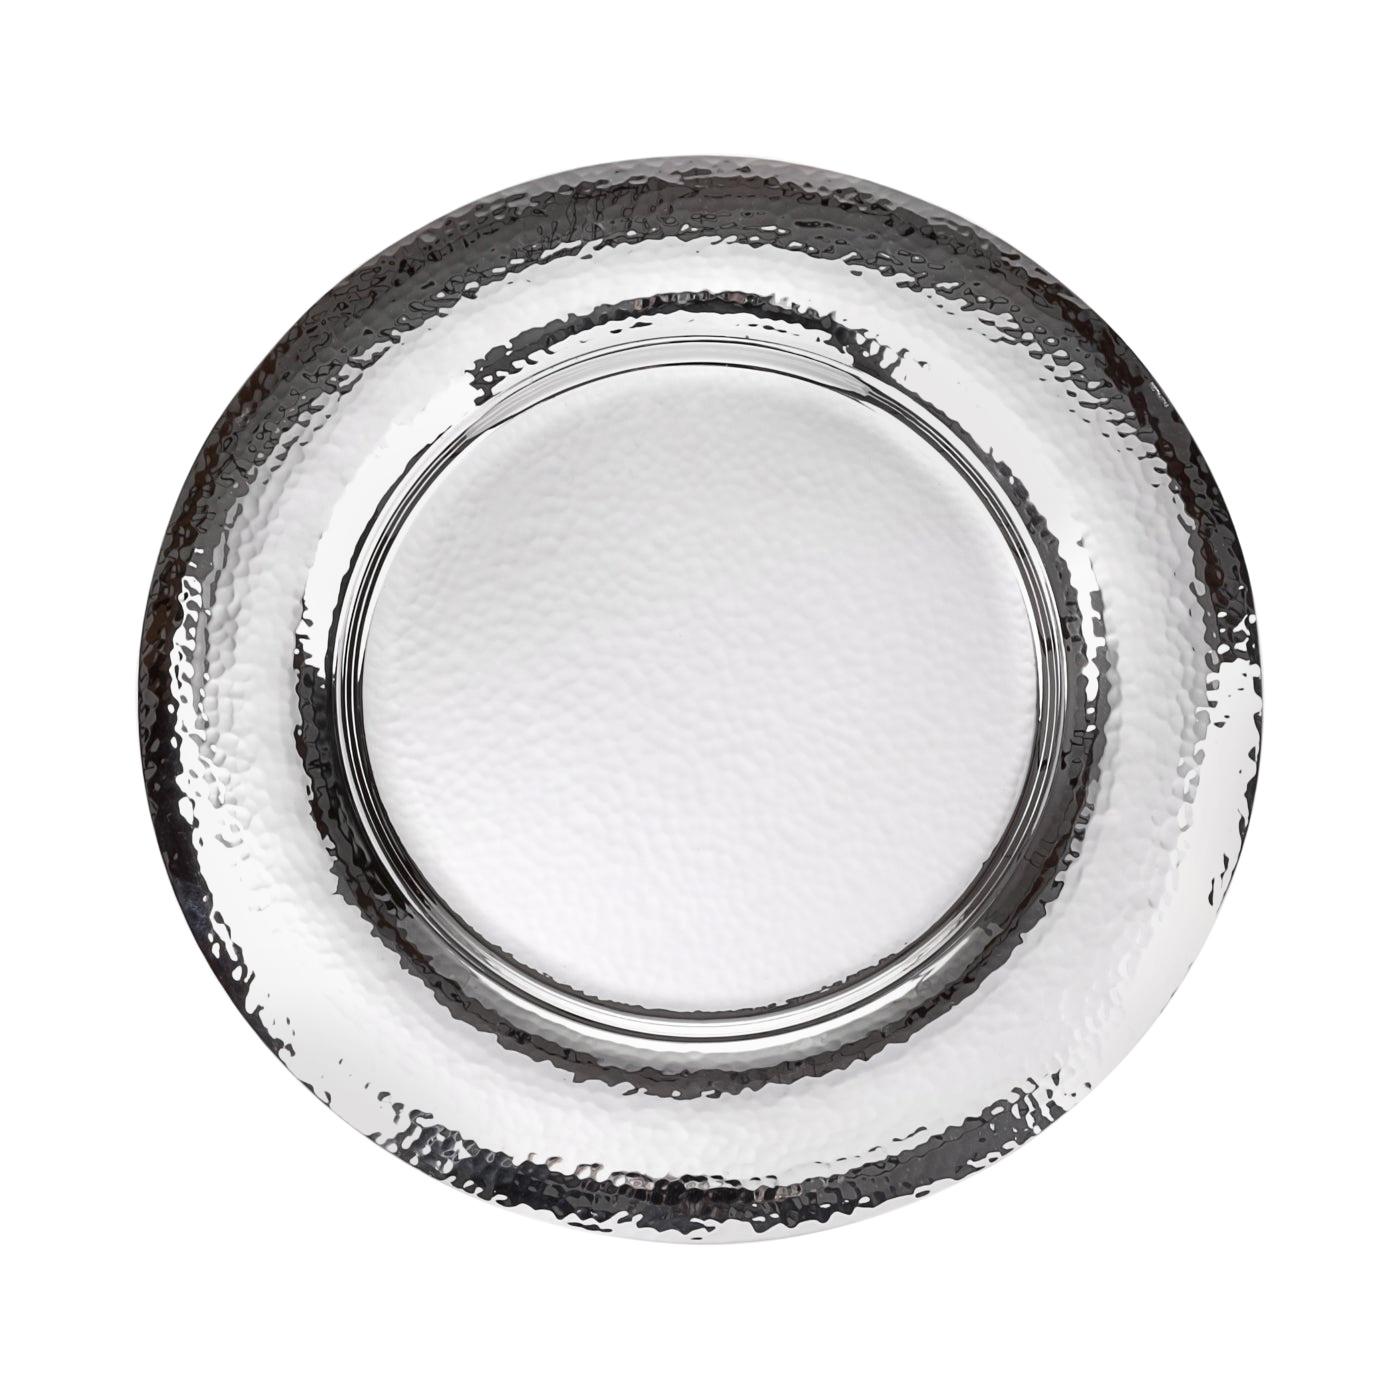 Troiana Sterling Silver Decorative Plate